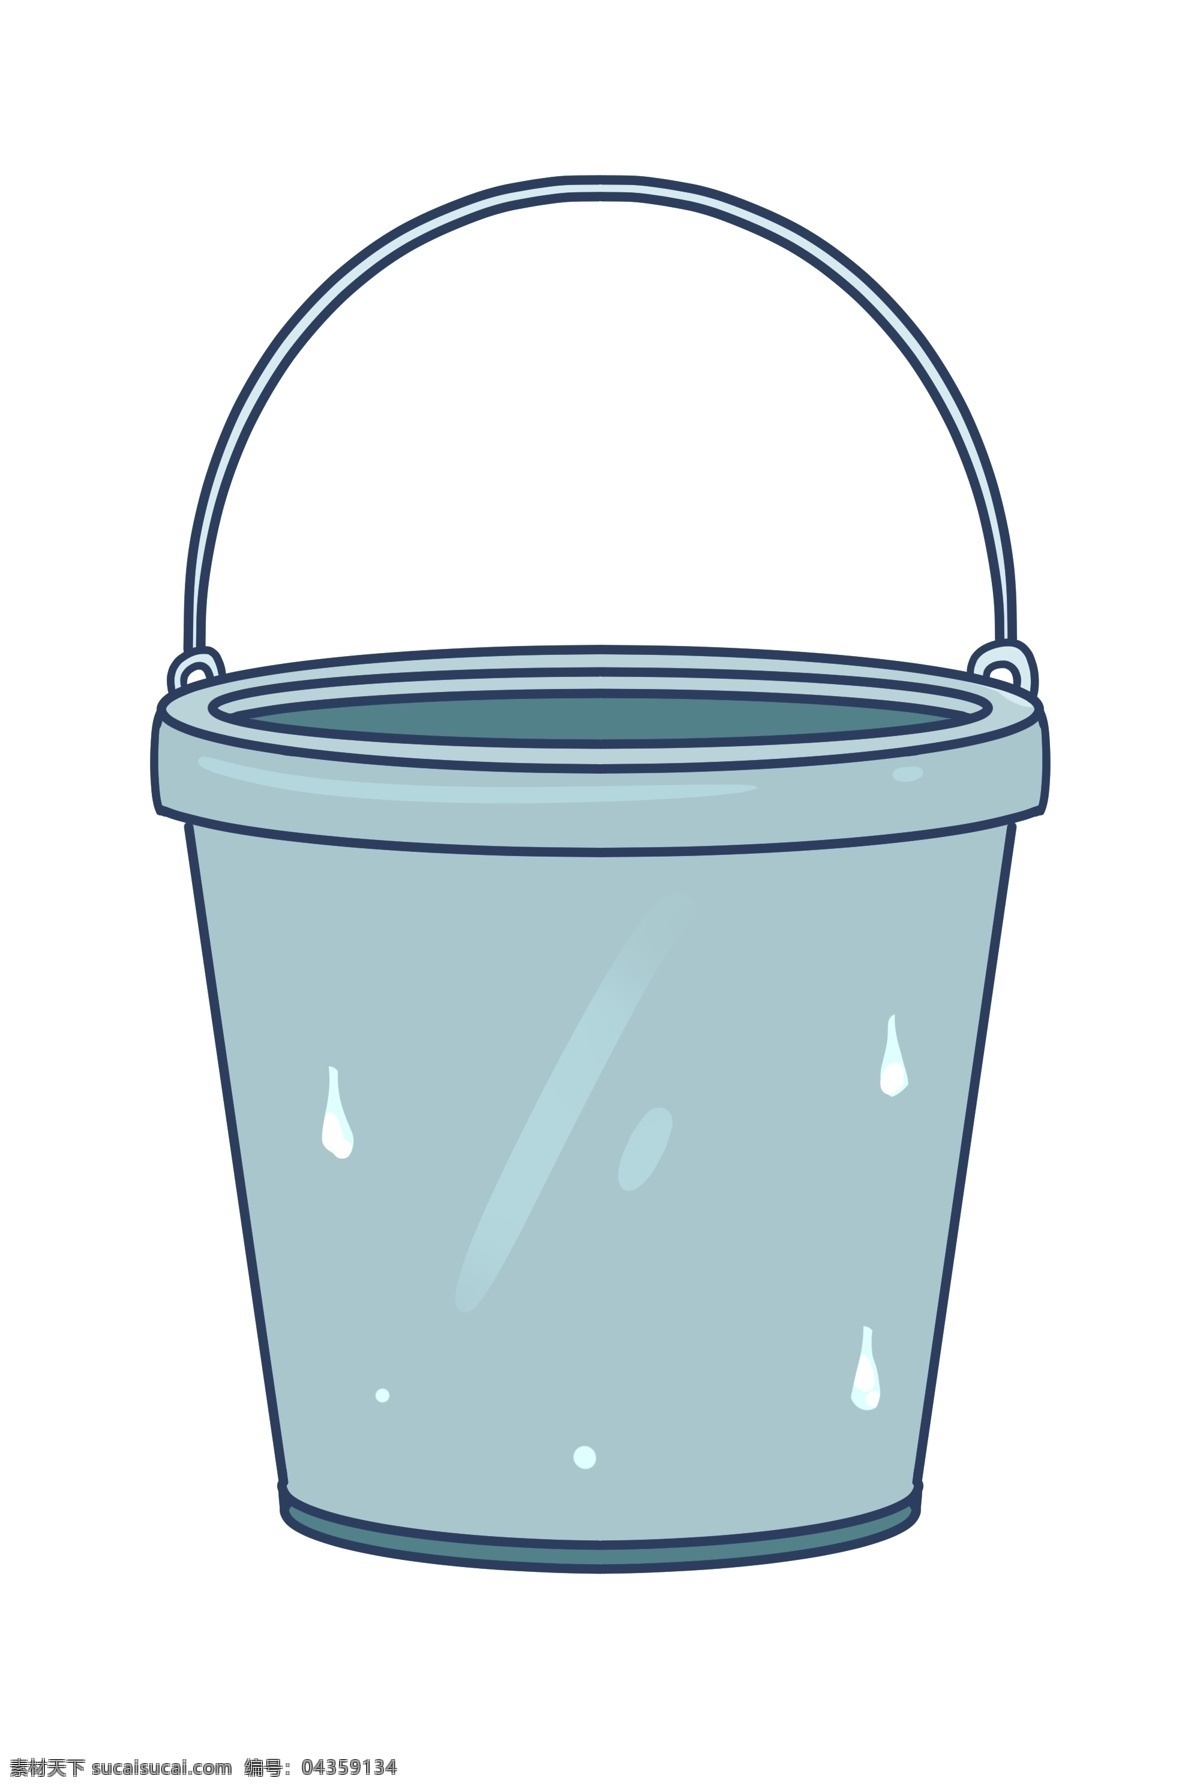 铁桶 百货 卡通 插画 蓝色的铁桶 世界卫生日 卡通插画 清理工具 清洁 打扫 清扫垃圾 百货铁桶